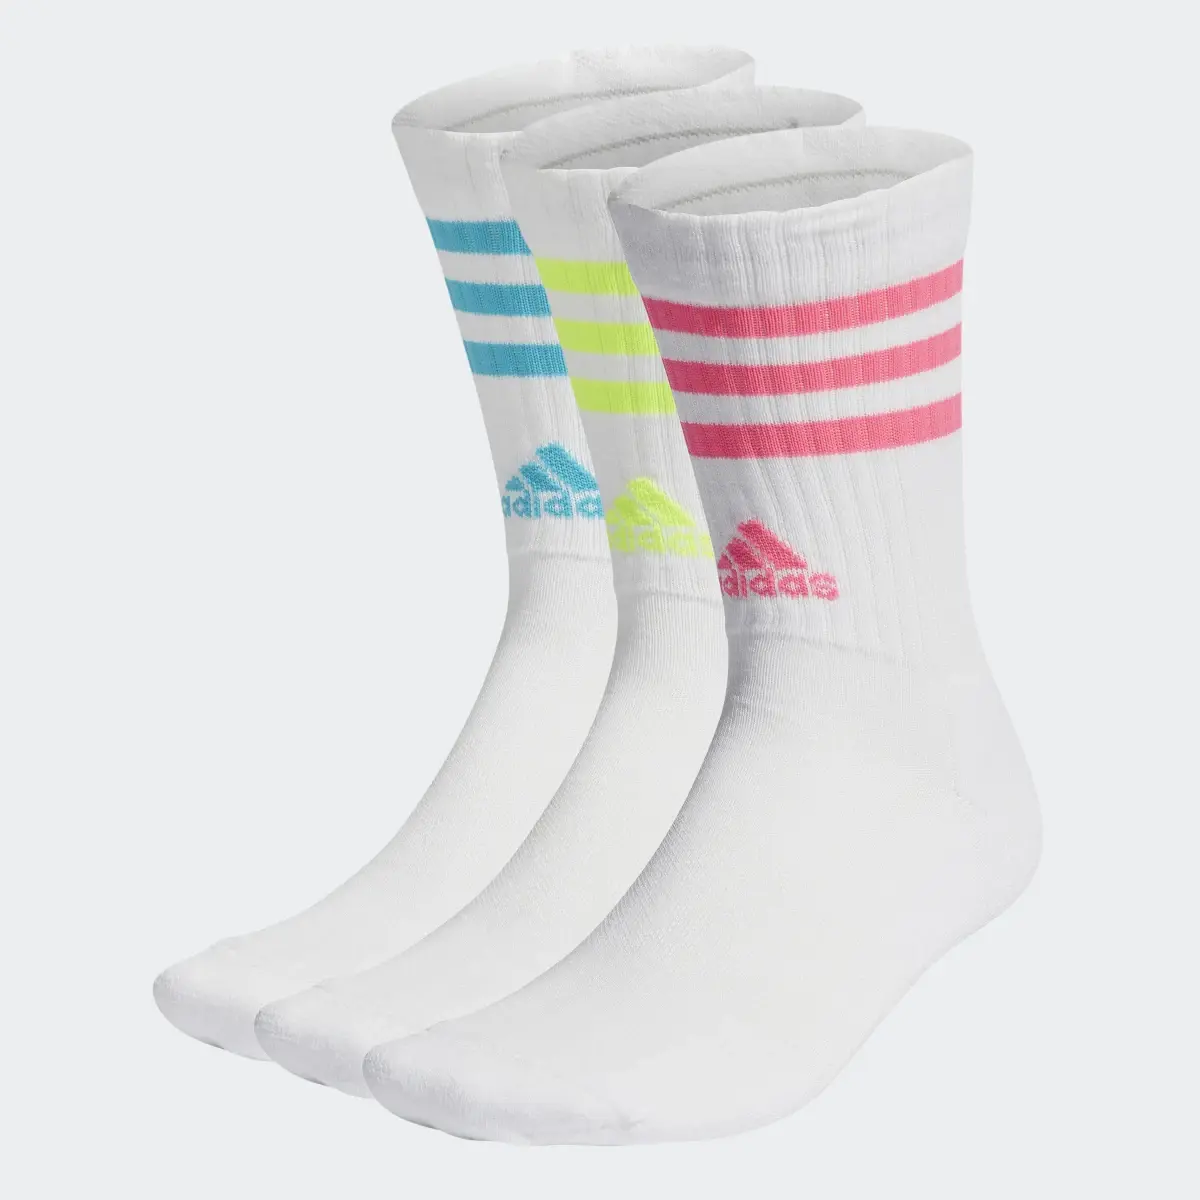 Adidas Chaussettes matelassées 3-Stripes (3 paires). 2